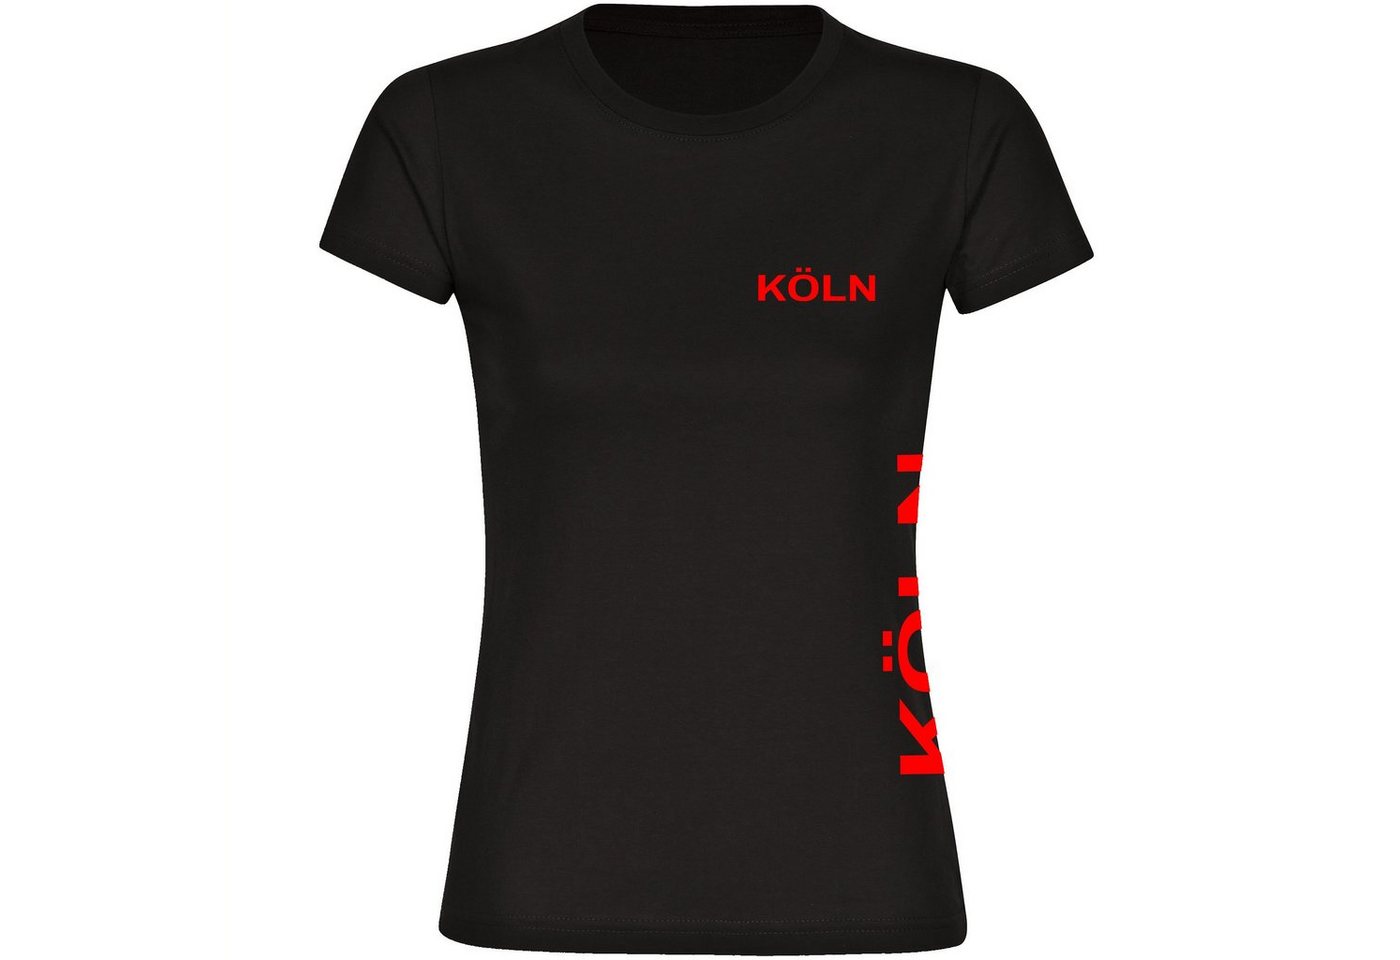 multifanshop T-Shirt Damen Köln - Brust & Seite - Frauen von multifanshop